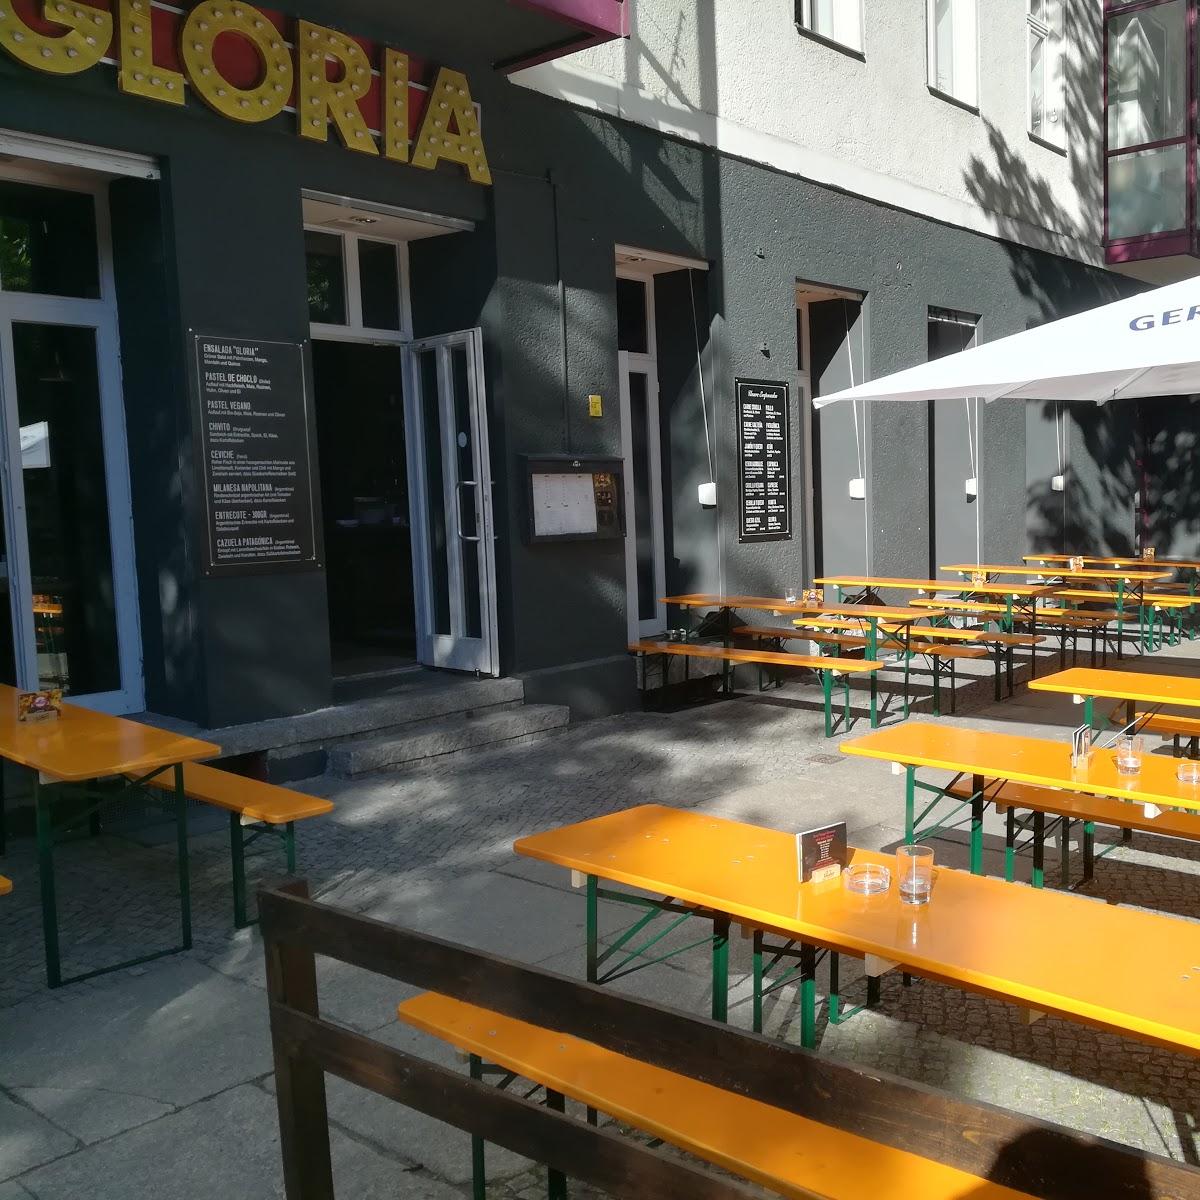 Restaurant "Gloria Berlin" in Berlin